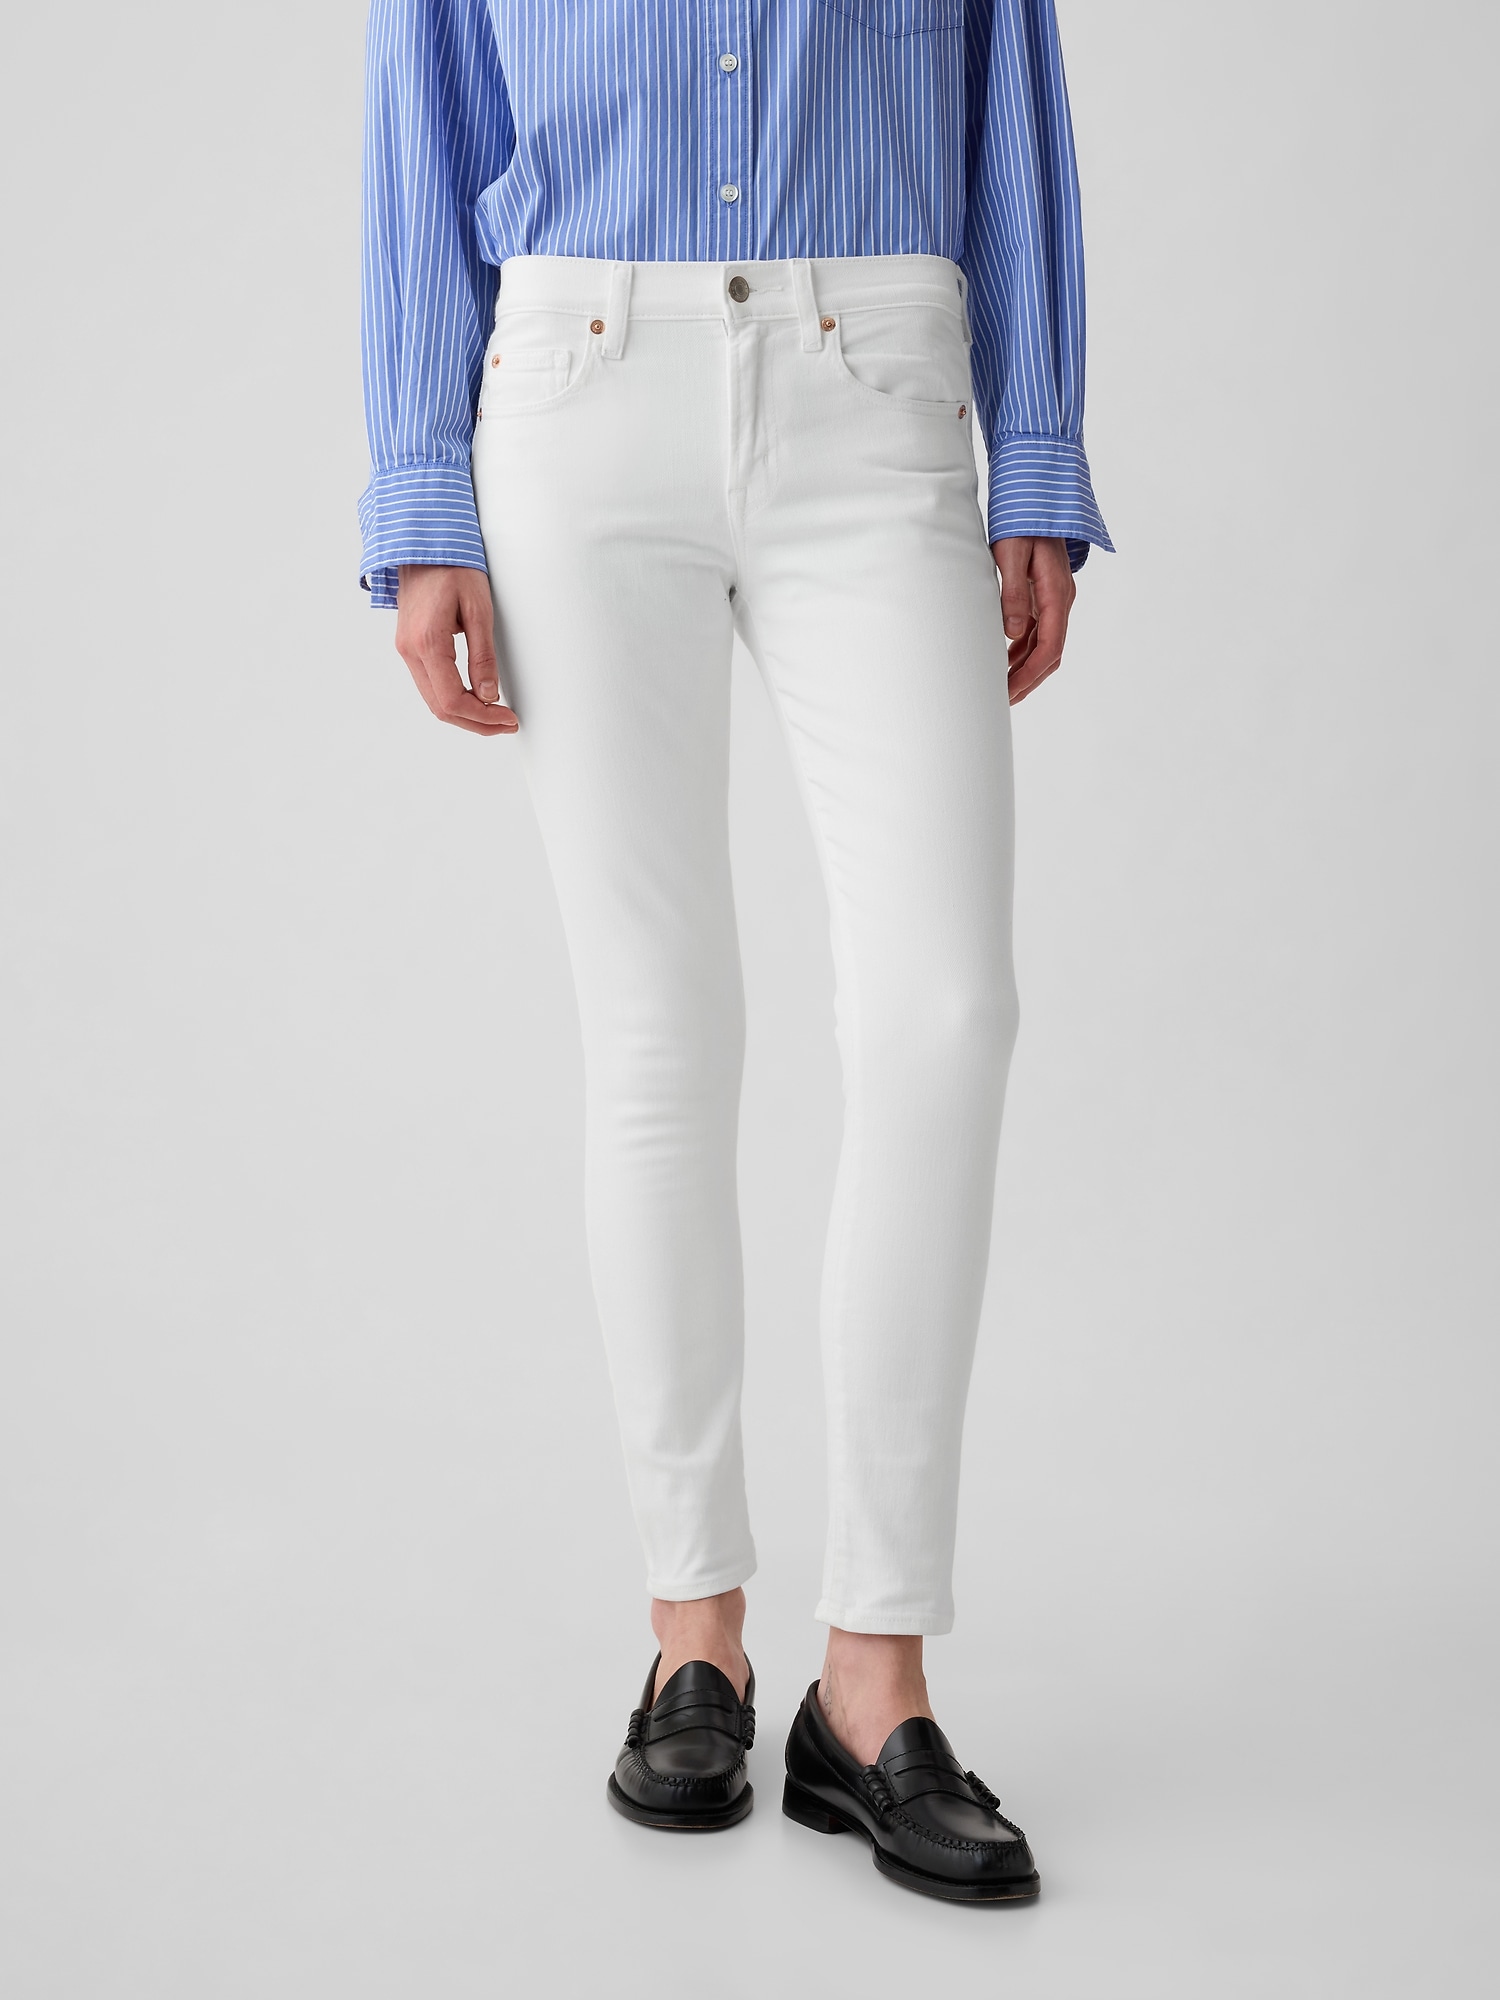 Buy GAP Women Women Blue Soft Wear Mid Rise Curvy True Skinny Jeans 